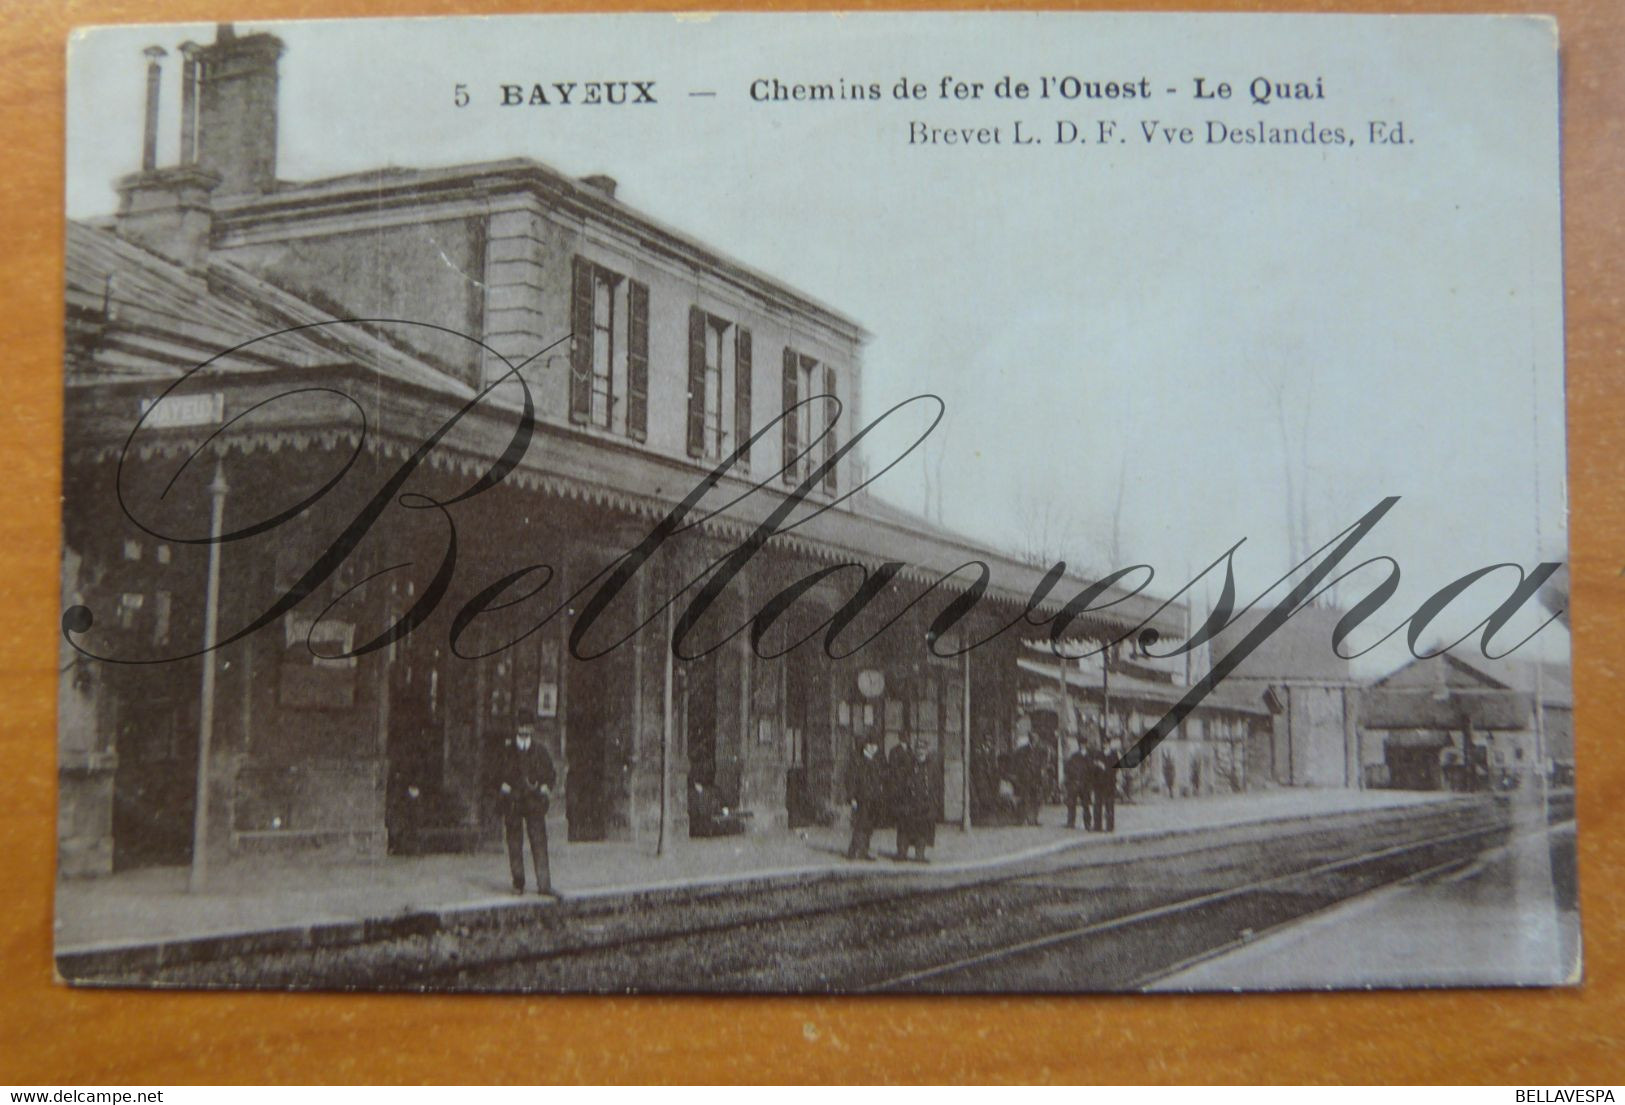 Bayeux Chemins De Fer De L'Ouest Le Quai. -Station . Railway.n°5 - Bayeux